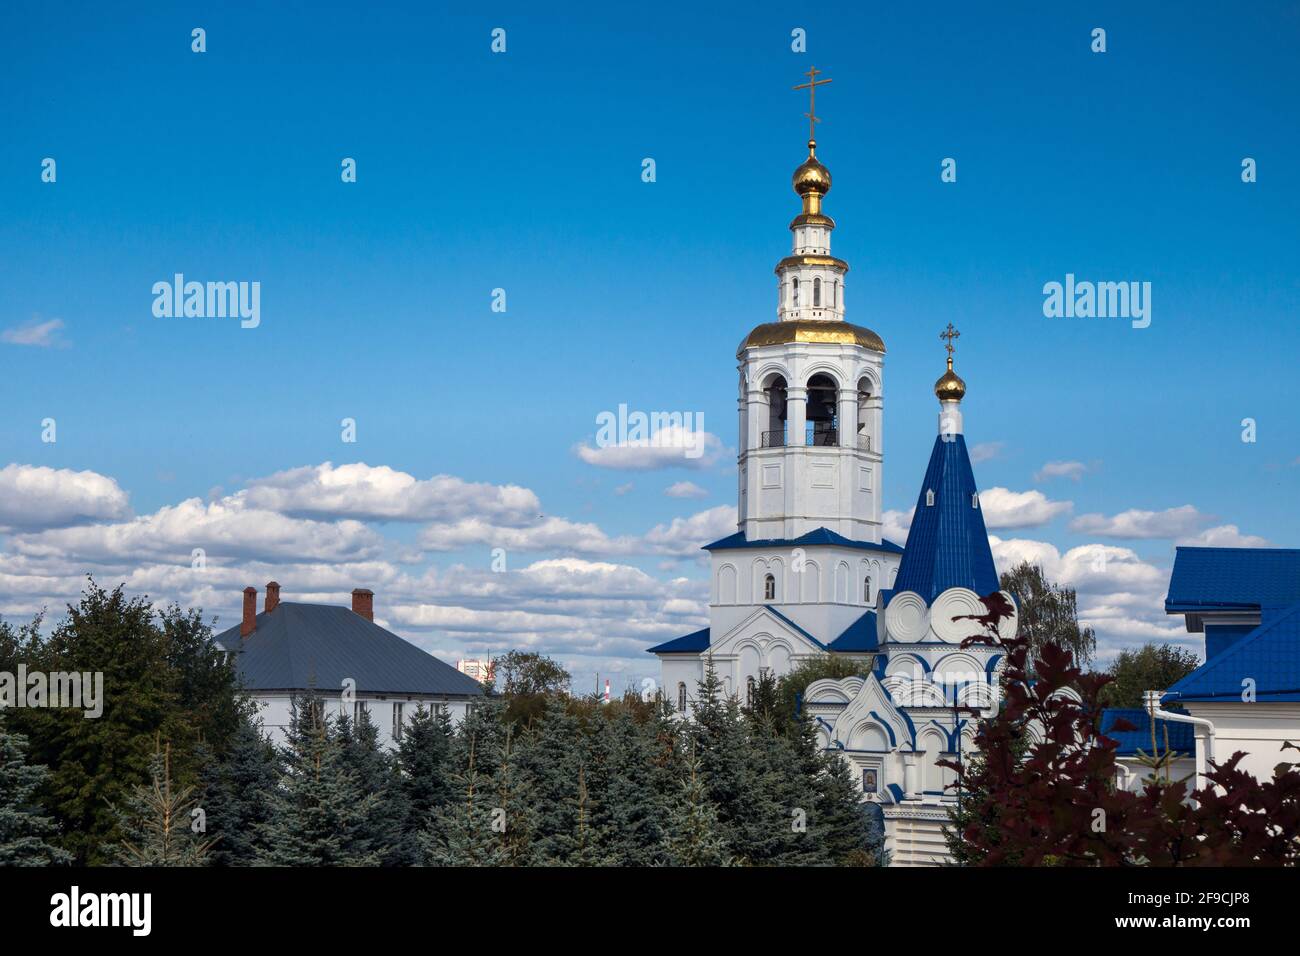 Vue depuis le toit sur l'église Saint-Vladimir et le clocher du monastère de Zilantov, Kazan, Russie. Monastère trouvé en 1552 Banque D'Images